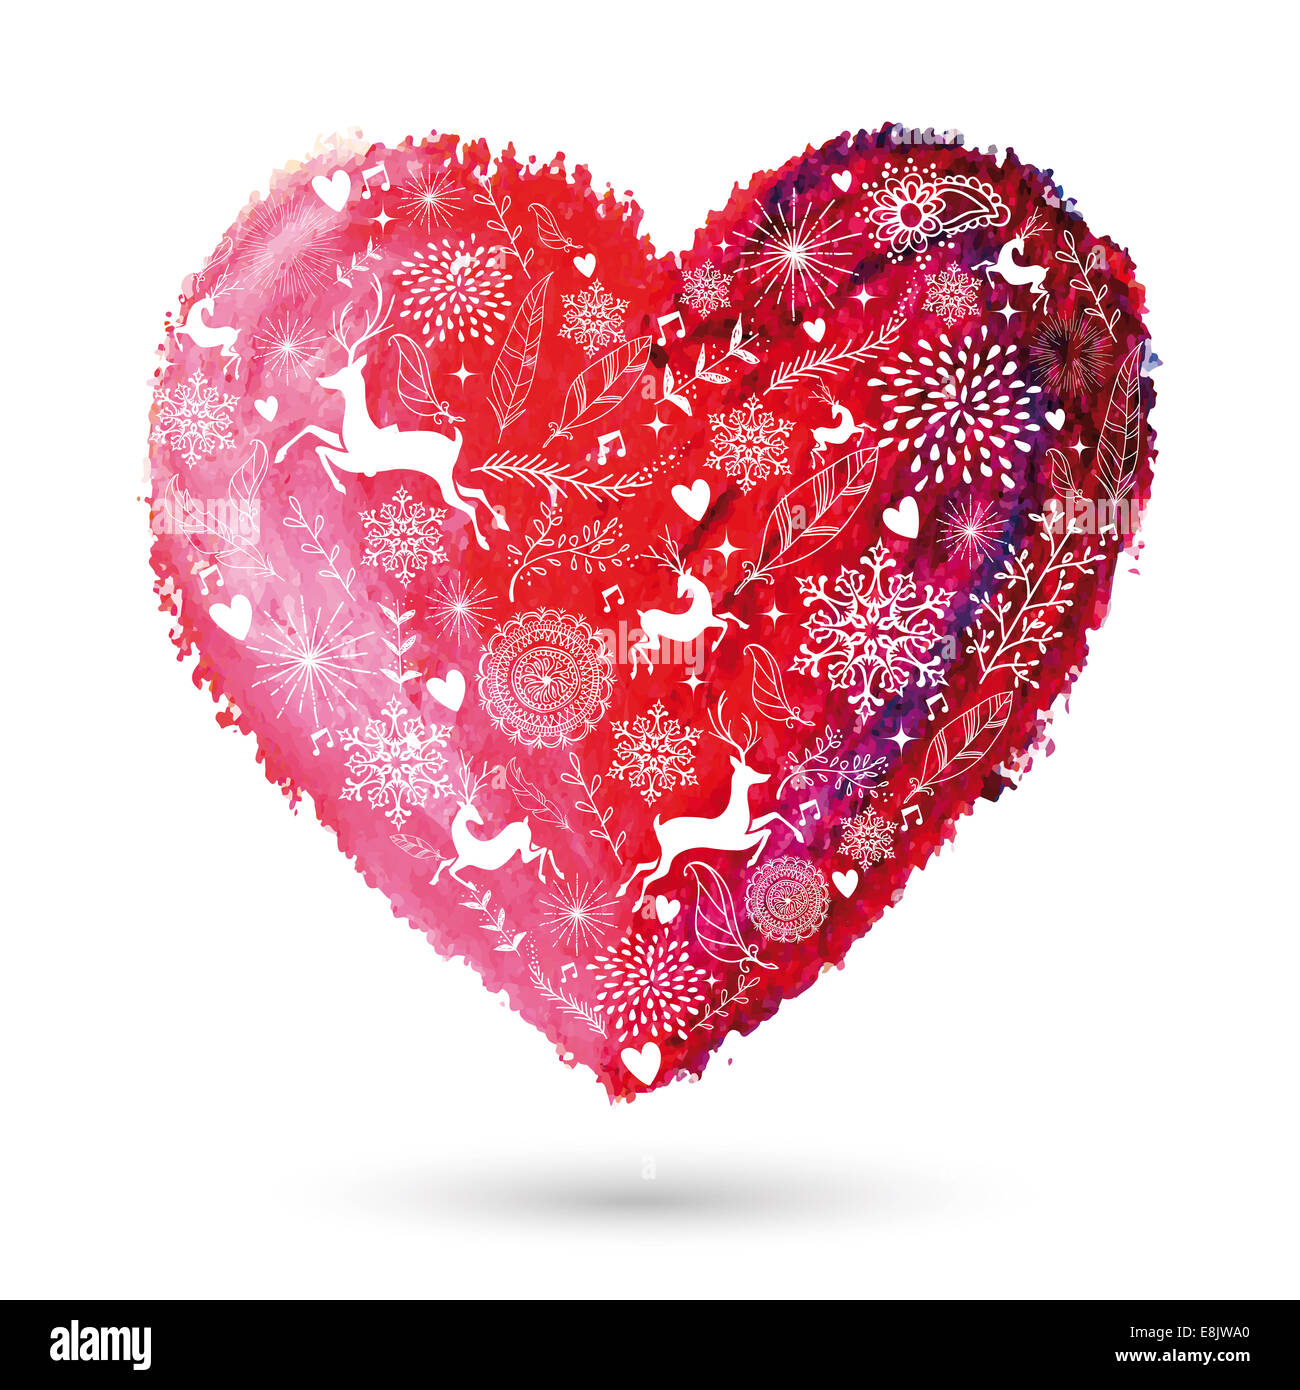 Éléments de Noël plus oilpastel art dessinés à la main, coeur d'amour. Fichier vectoriel EPS10 organisé en couches pour l'édition facile. Banque D'Images